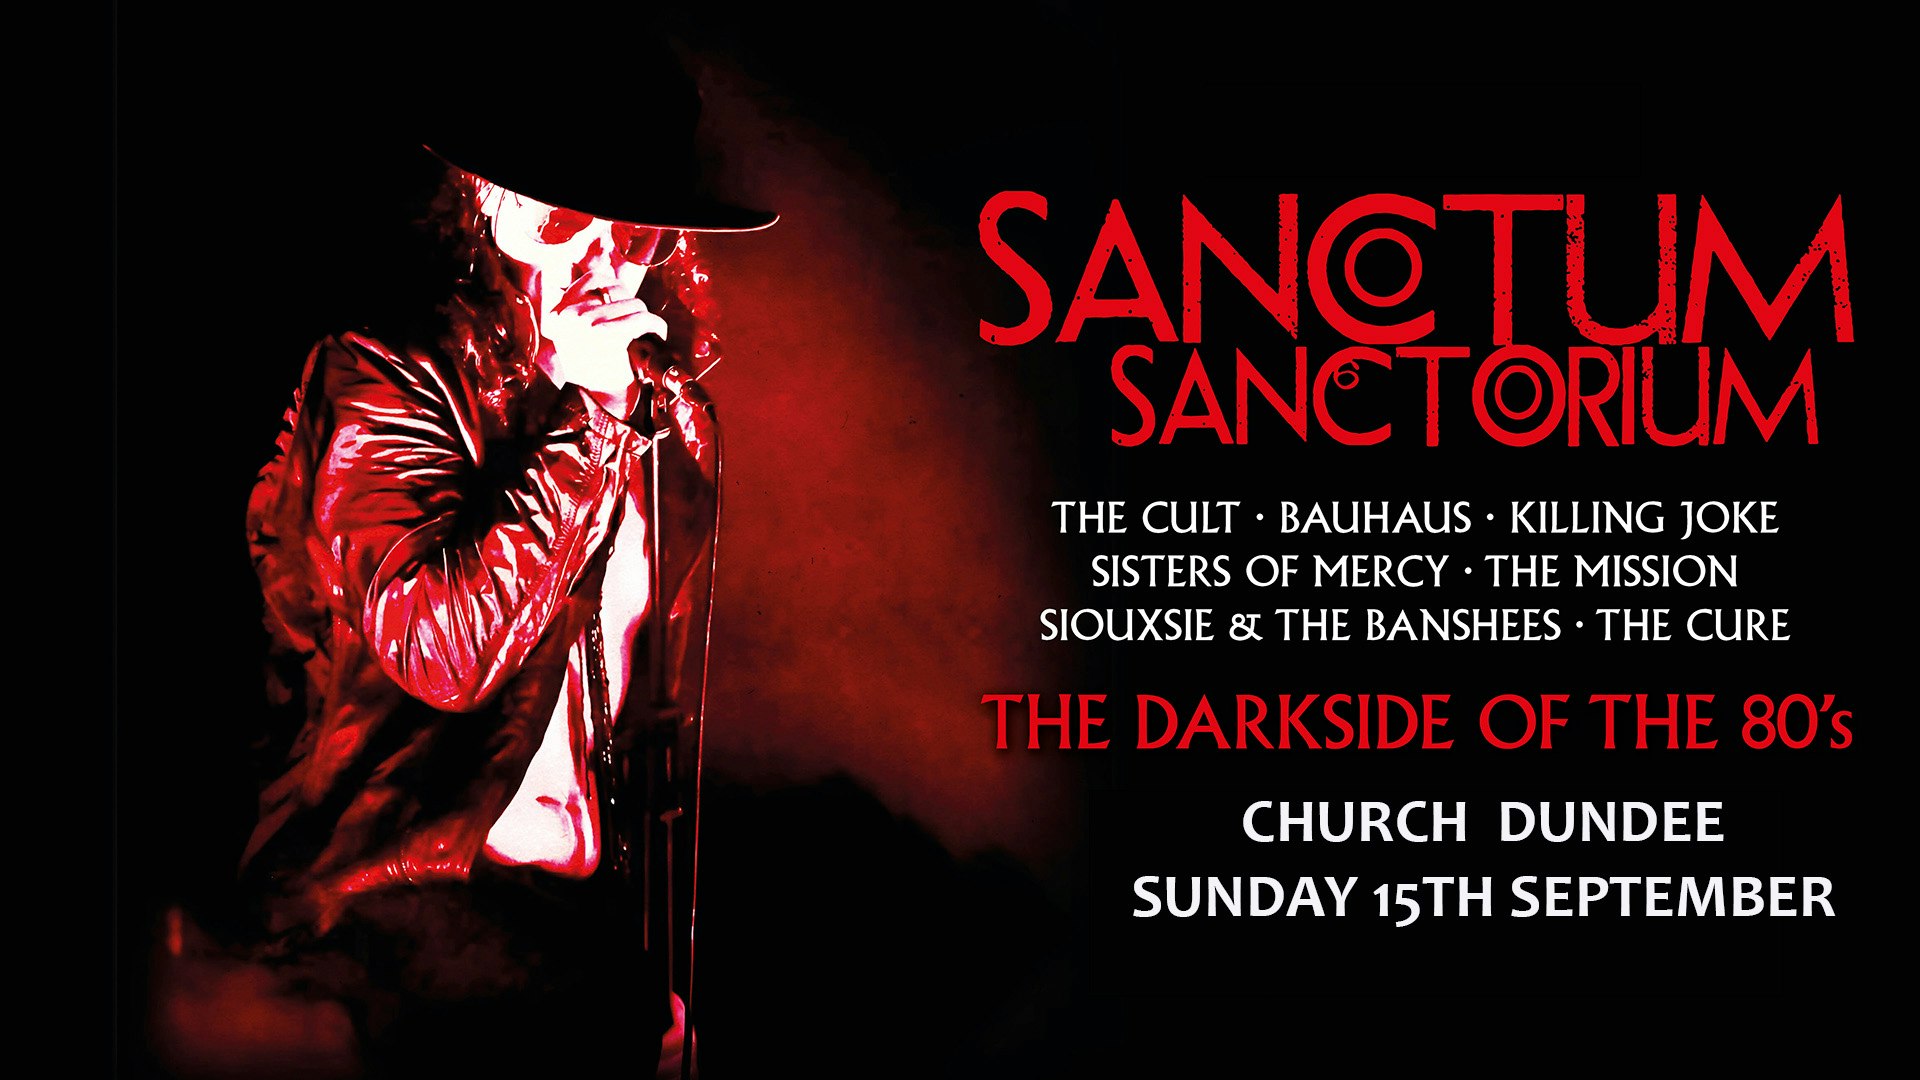 Sanctum Sanctorium – The Darkside of the 80’s Live